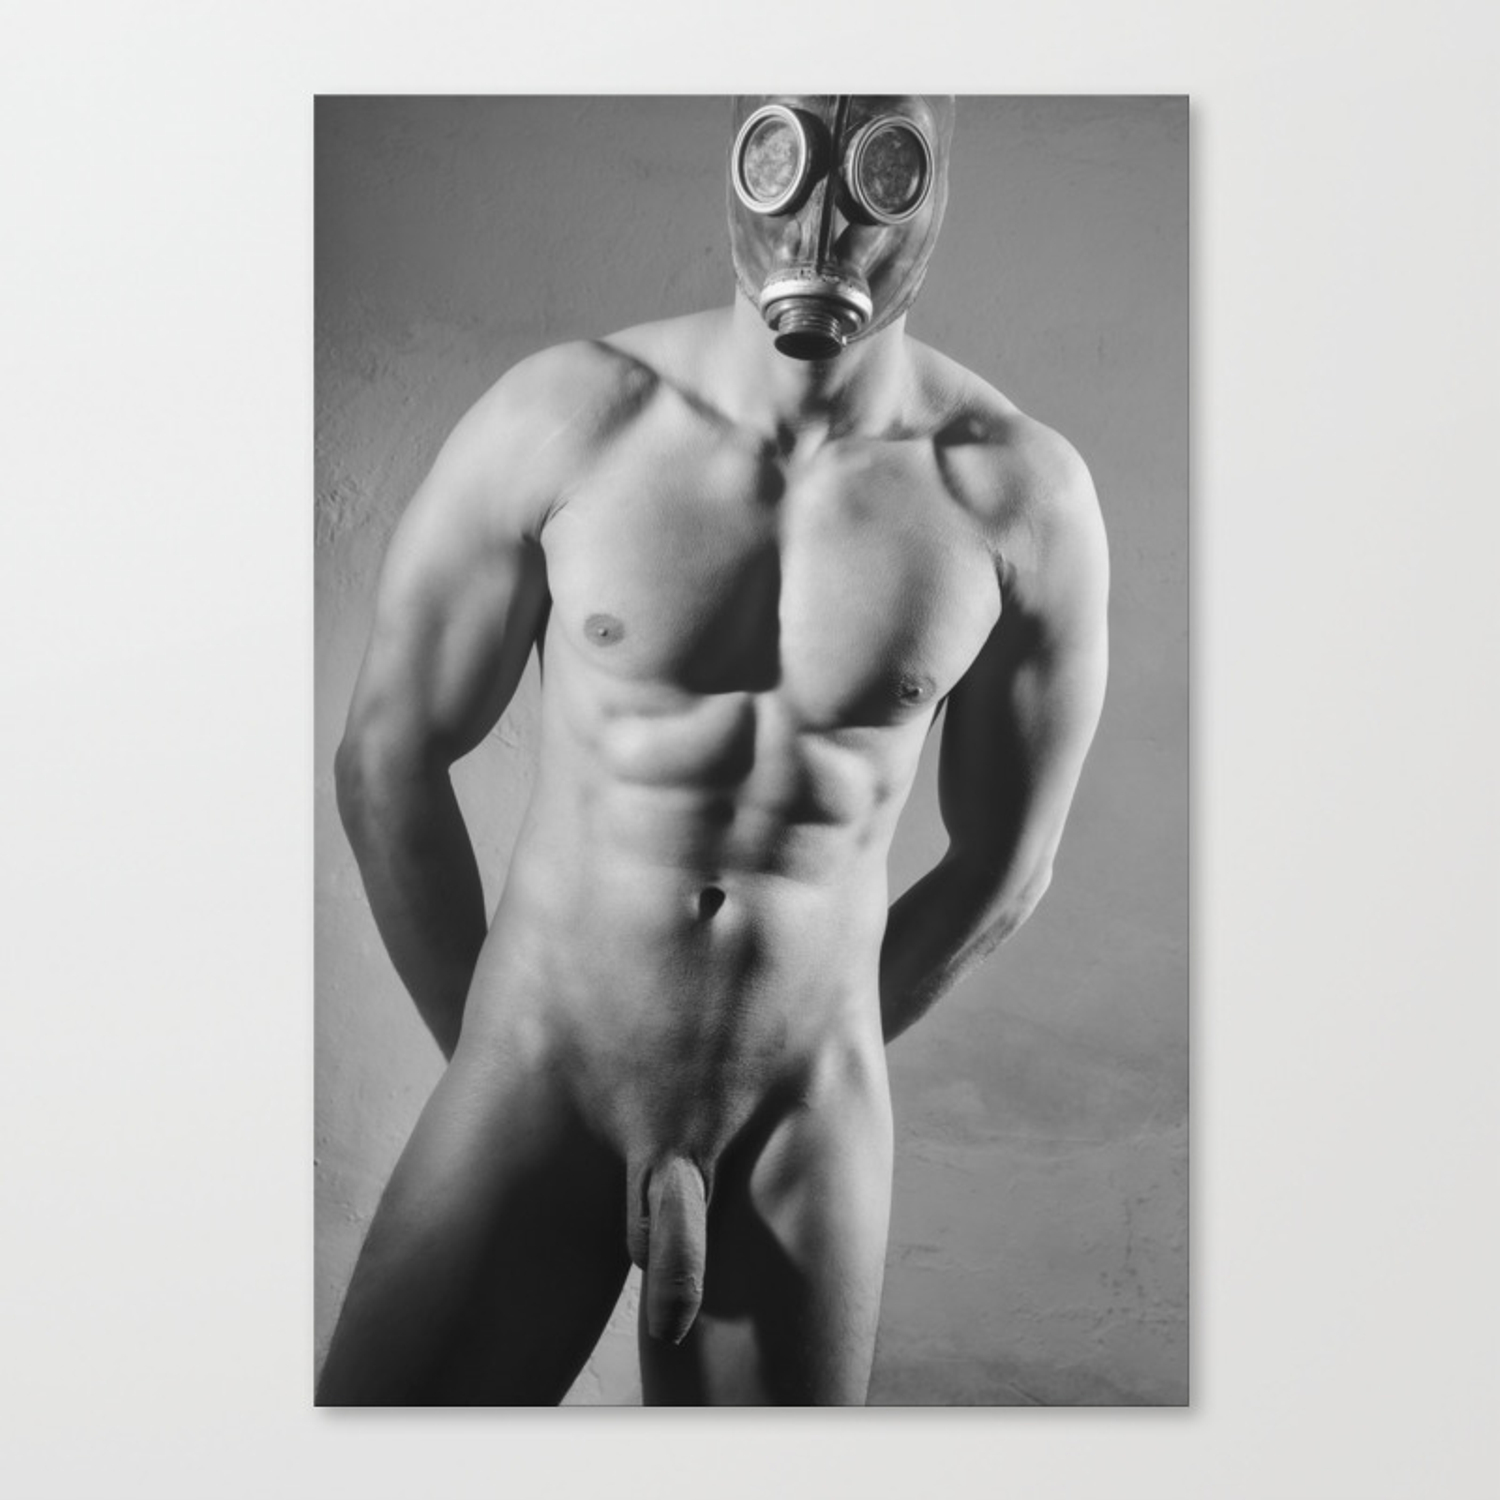 Mask man - nude photos